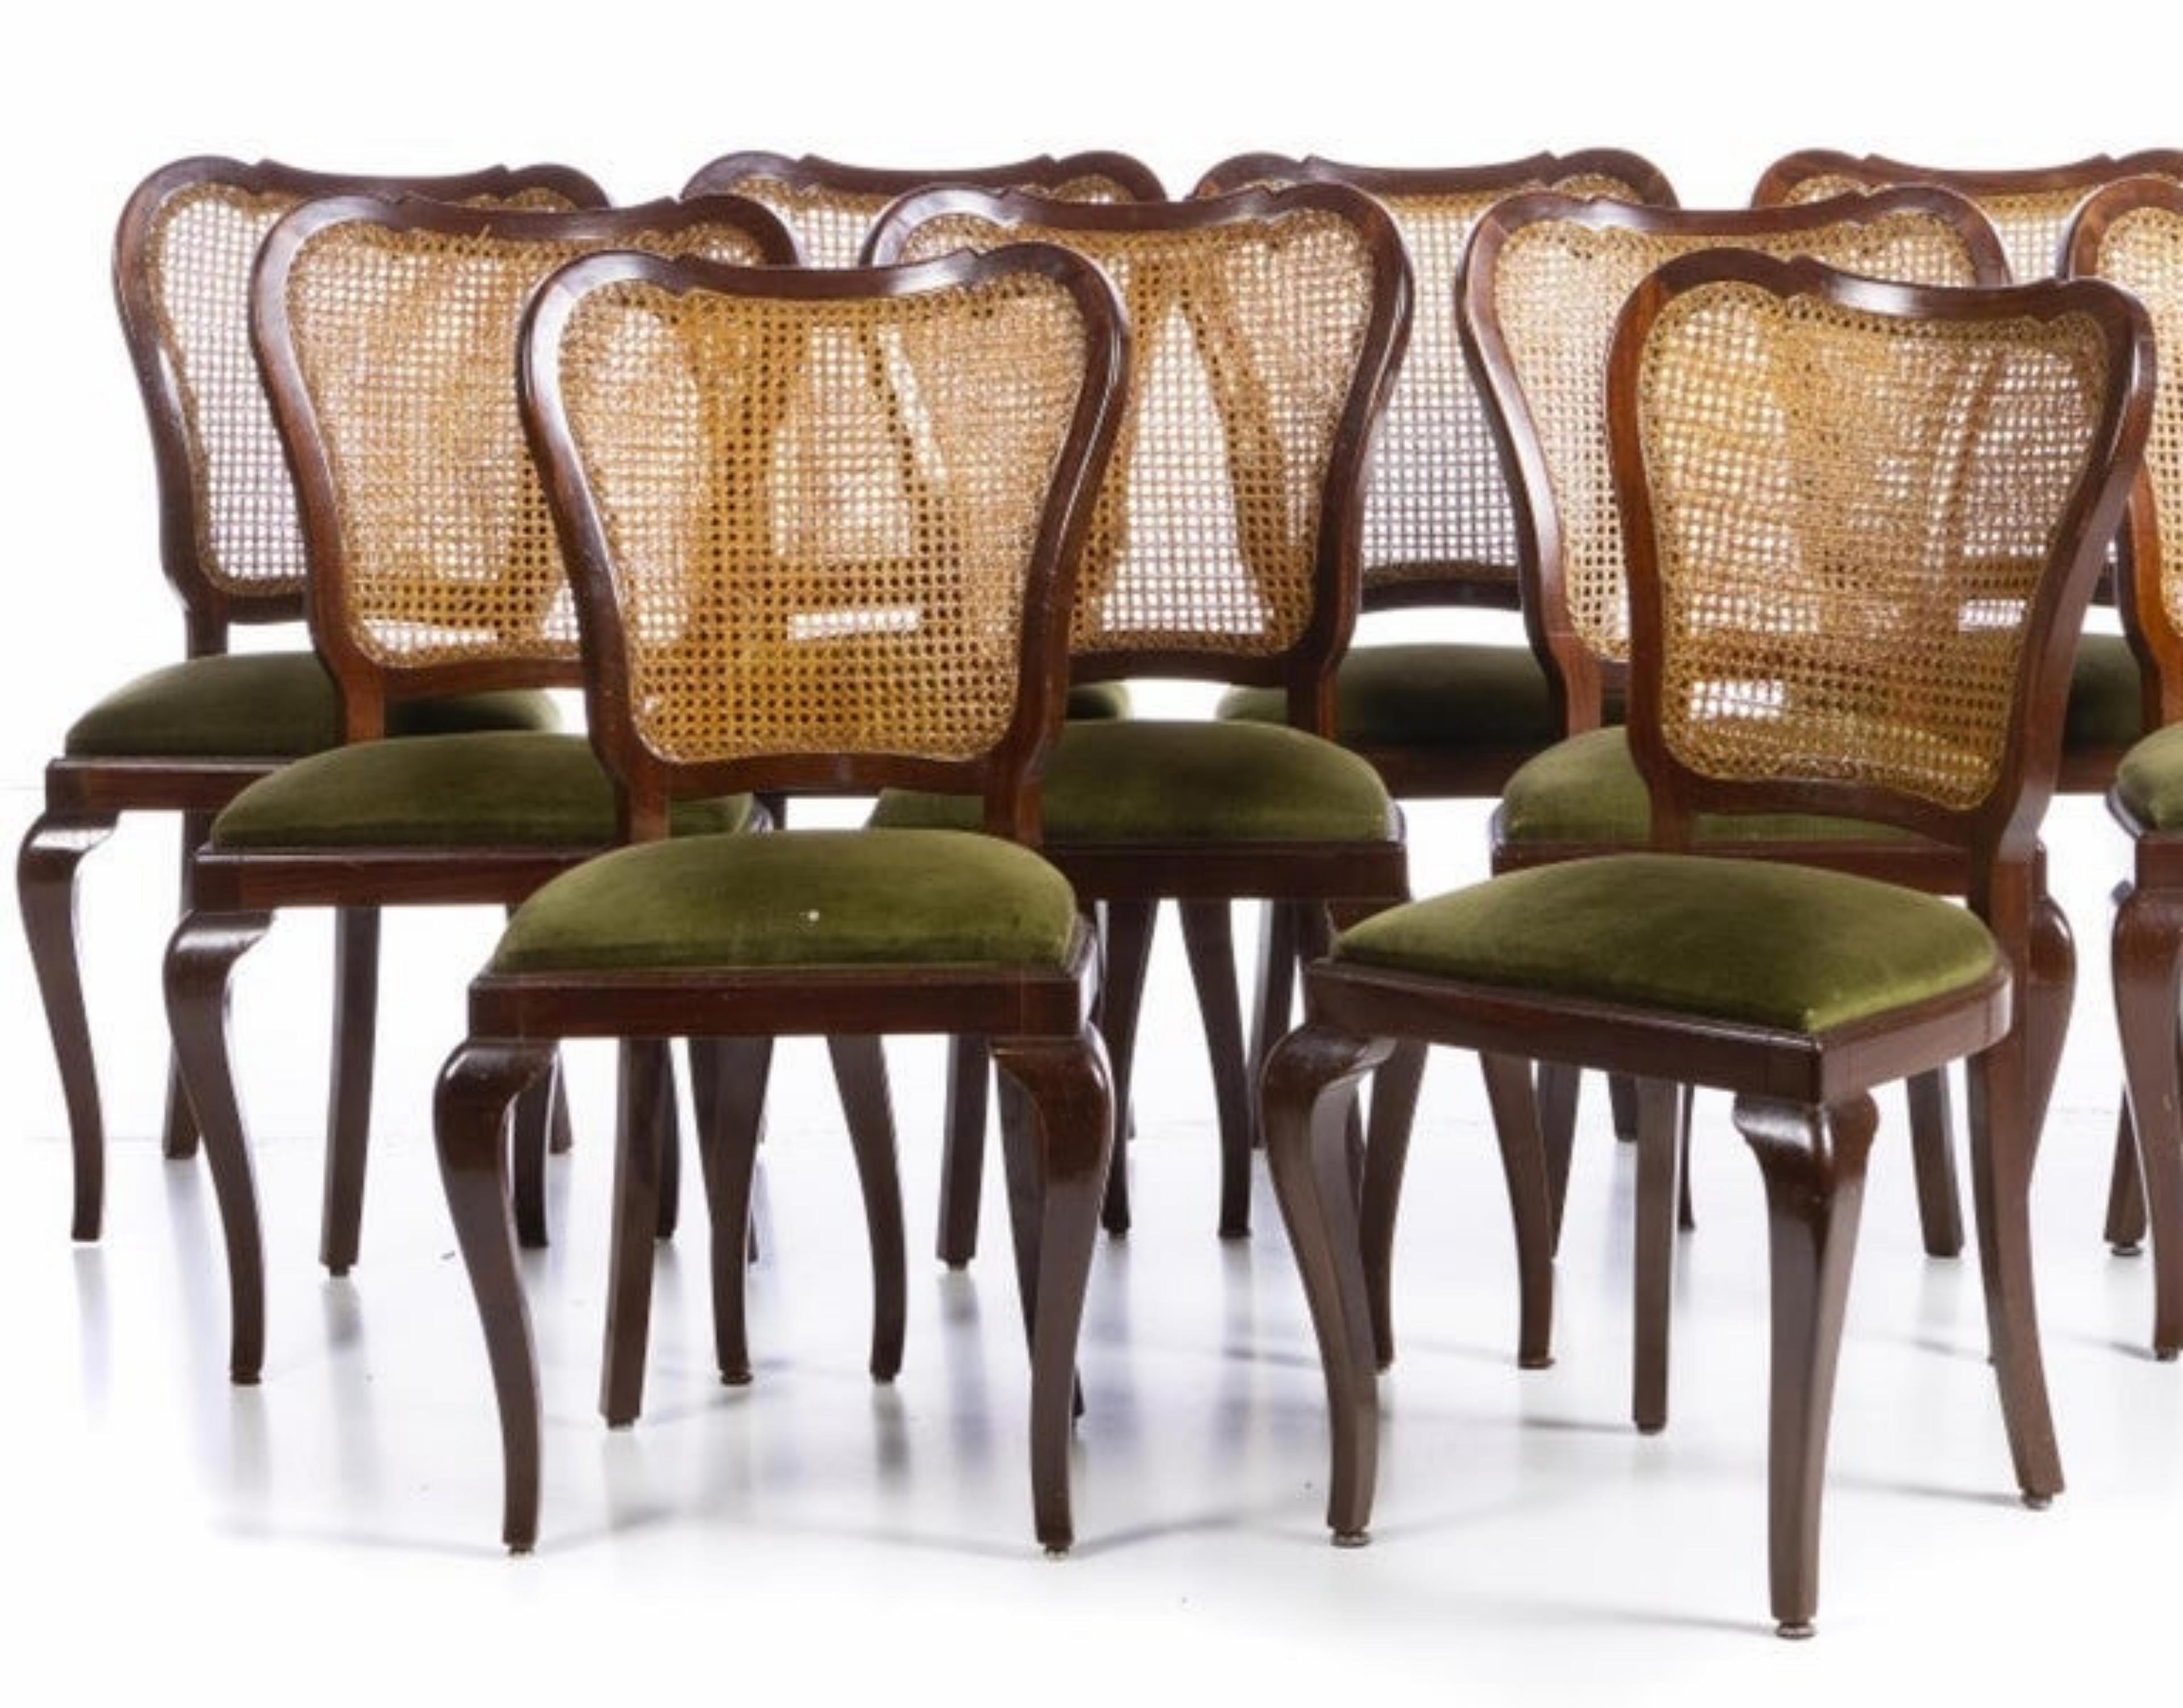 11 chaises
Portugaise du 20ème siècle, en bois d'acajou avec dossier en paille, assises en tissu. Signes d'utilisation. Dimensions : 90 x 50 x 42 cm : 90 x 50 x 42 cm.